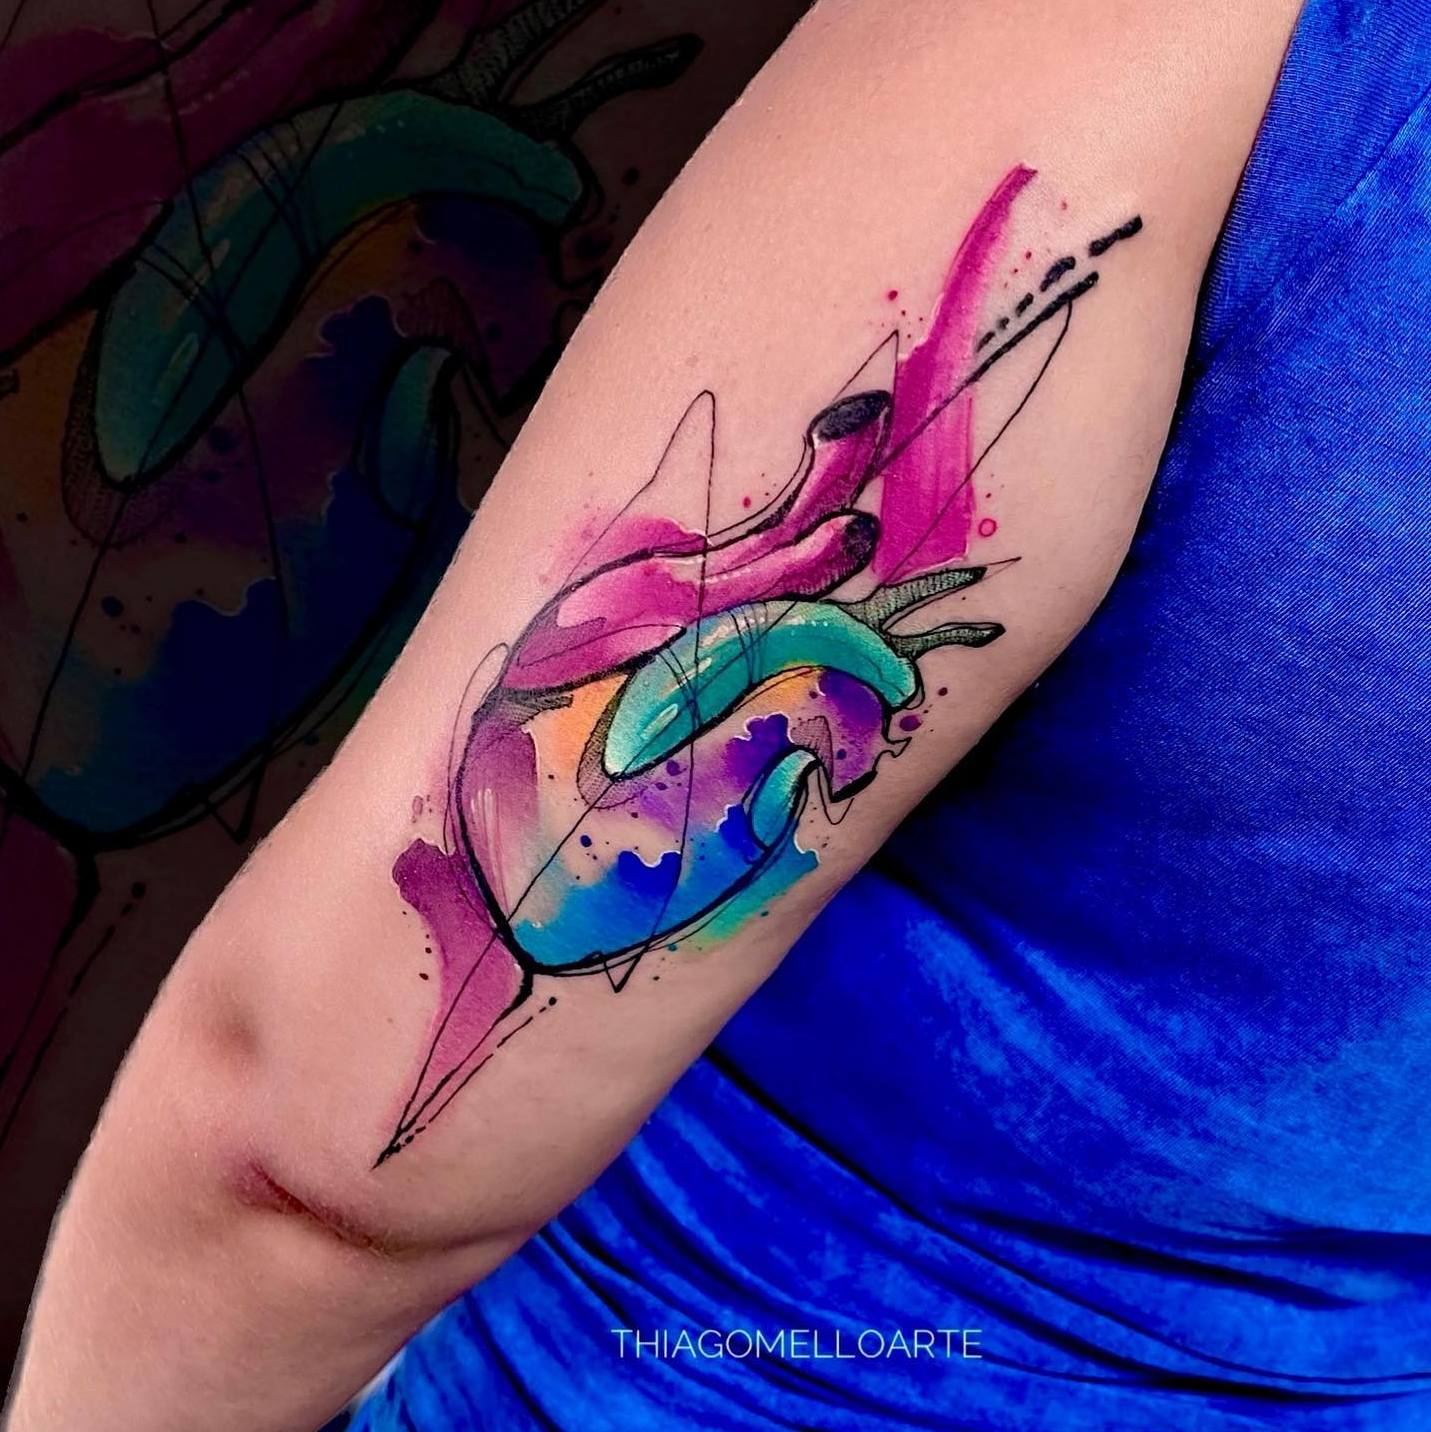 Akwarelowy tatuaż przedstawiający realistyczny obraz serca w kolorach różowym, niebieskim, fioletowym i pomarańczowym